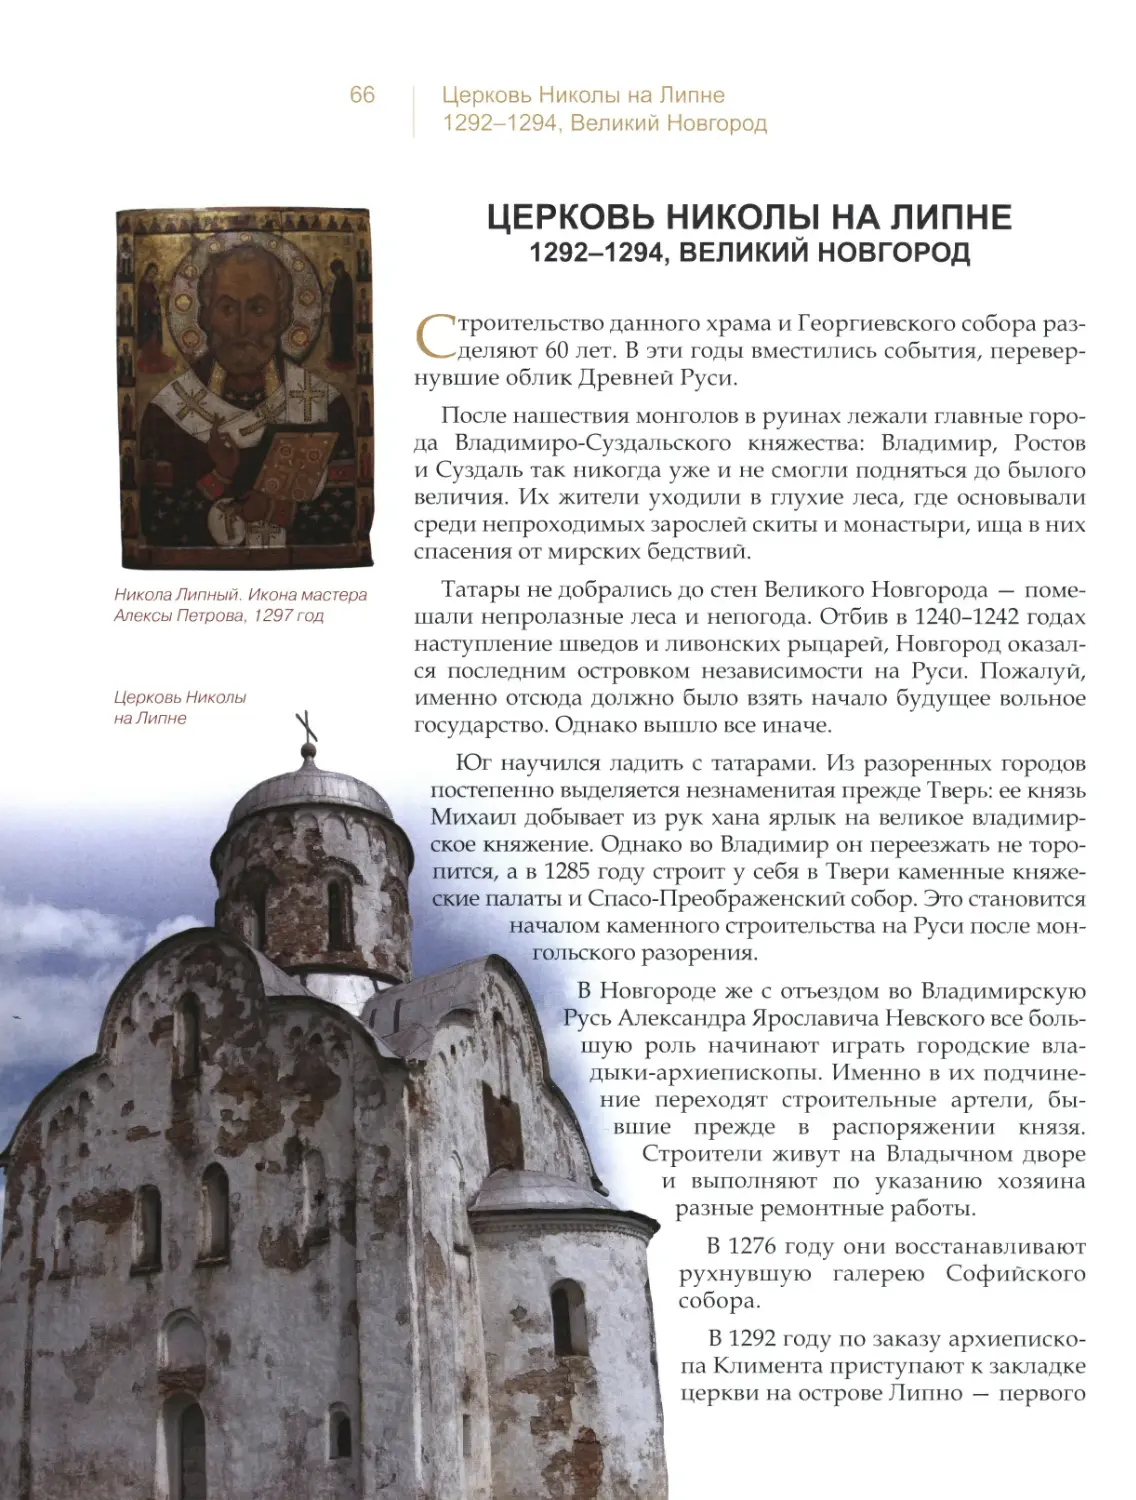 Церковь Николы на Липне, Великий Новгород